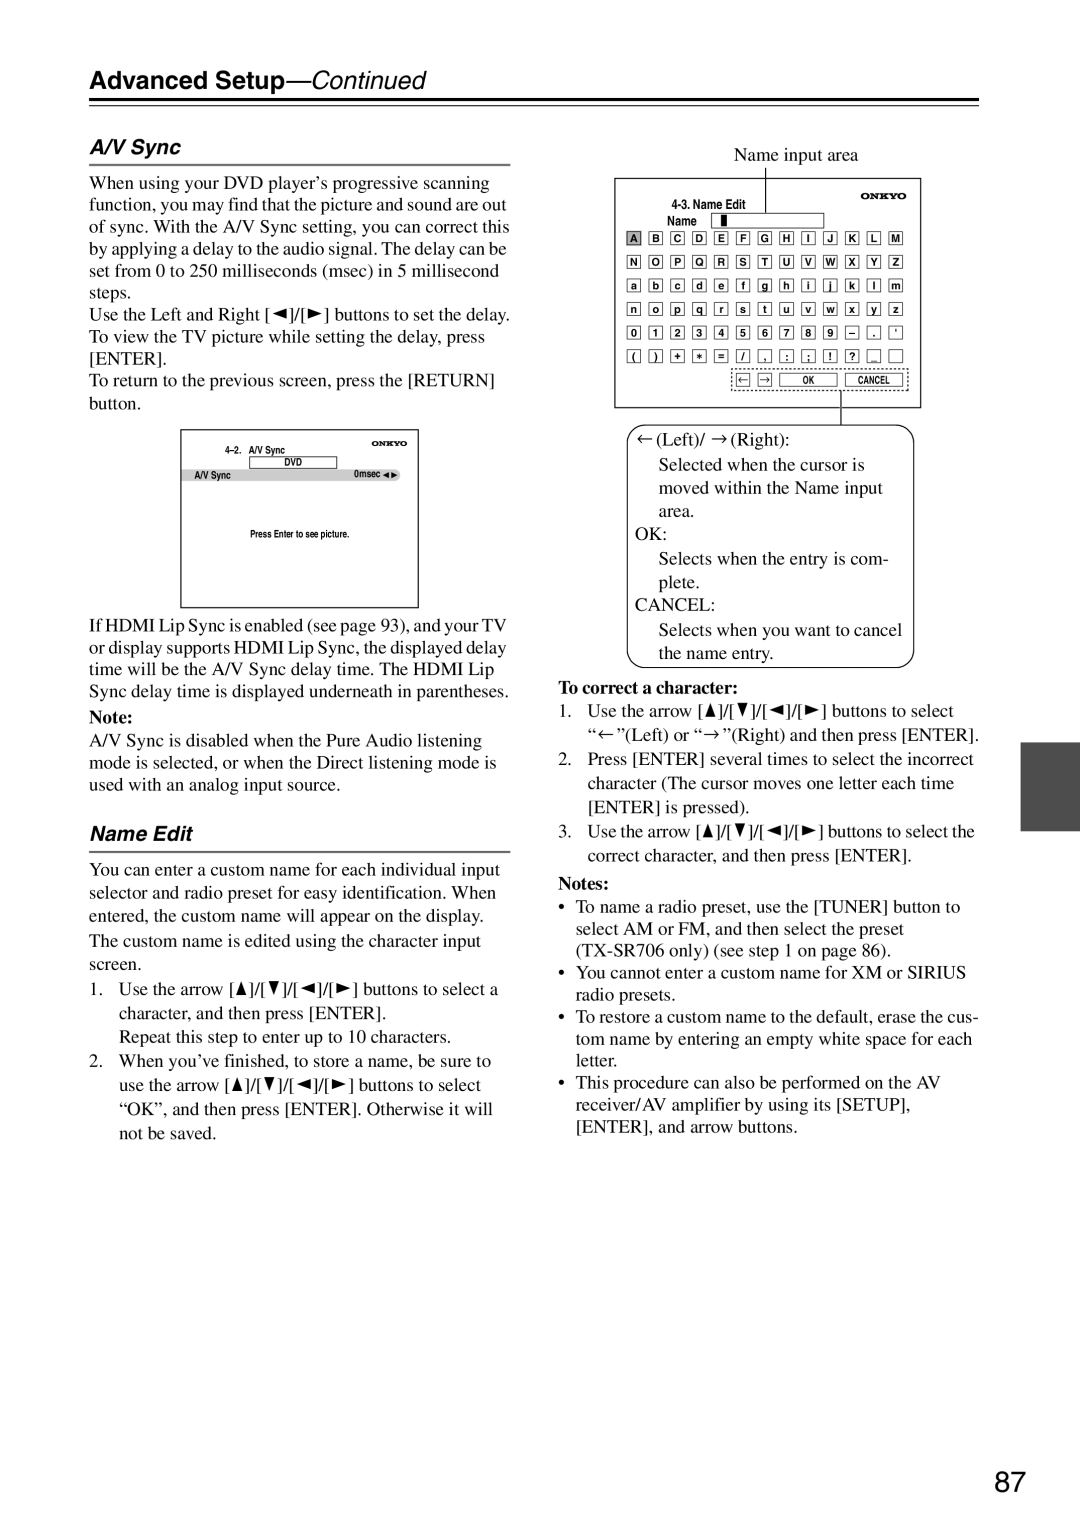 Onkyo TX-SA706 instruction manual Name Edit, Advanced Setup—Continued, A/V Sync, To correct a character, Notes 